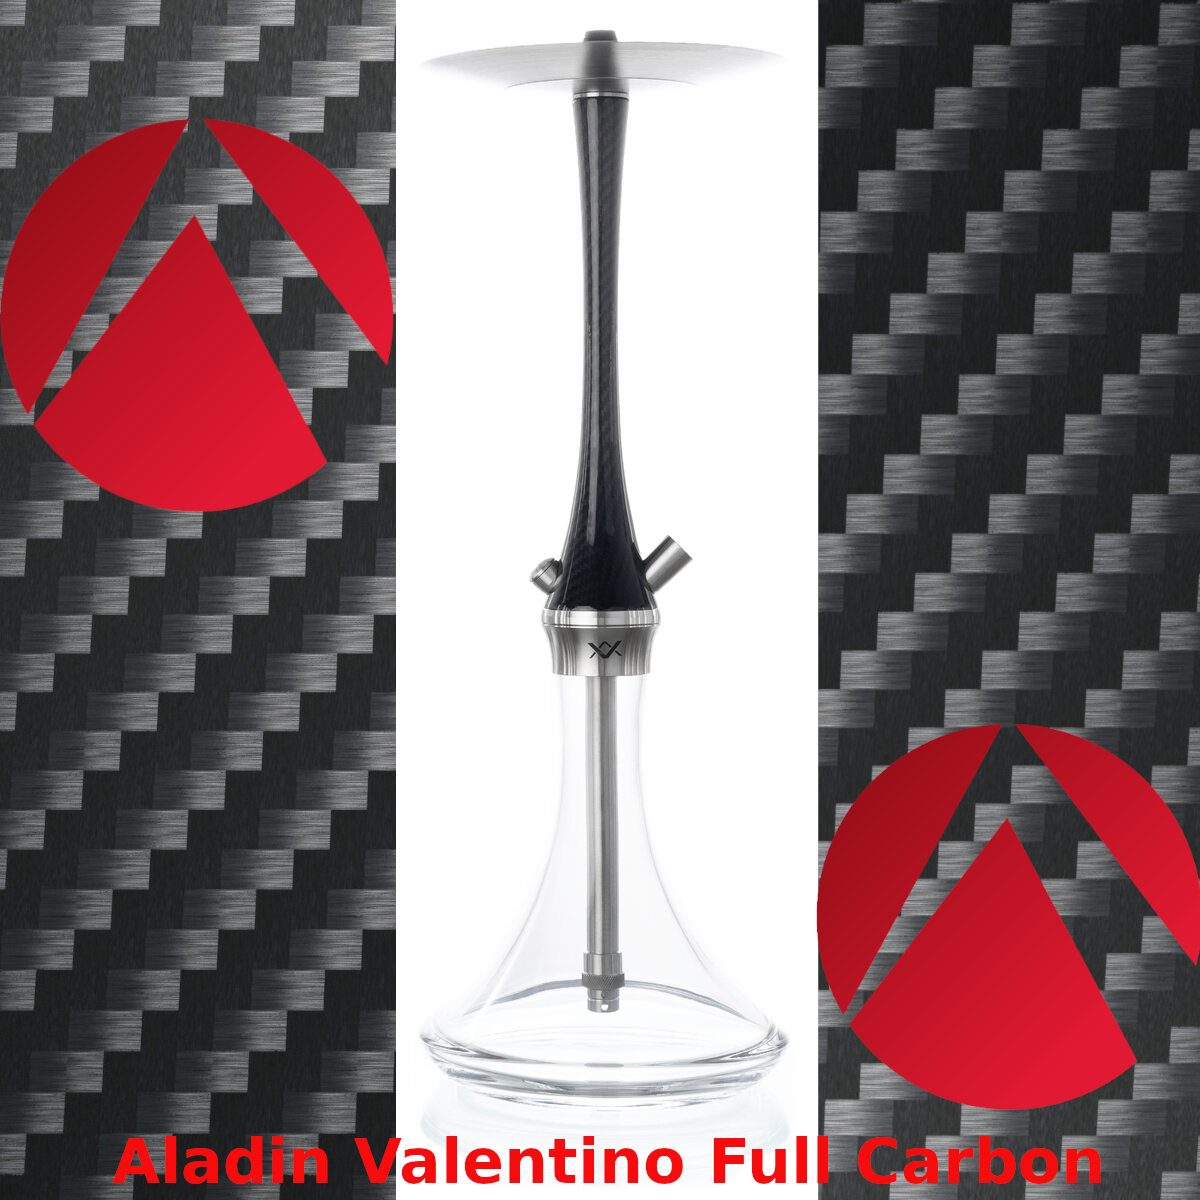 Aladin Valentino Full Carbon Hookah - Aladin Valentino Full Carbon Hookah